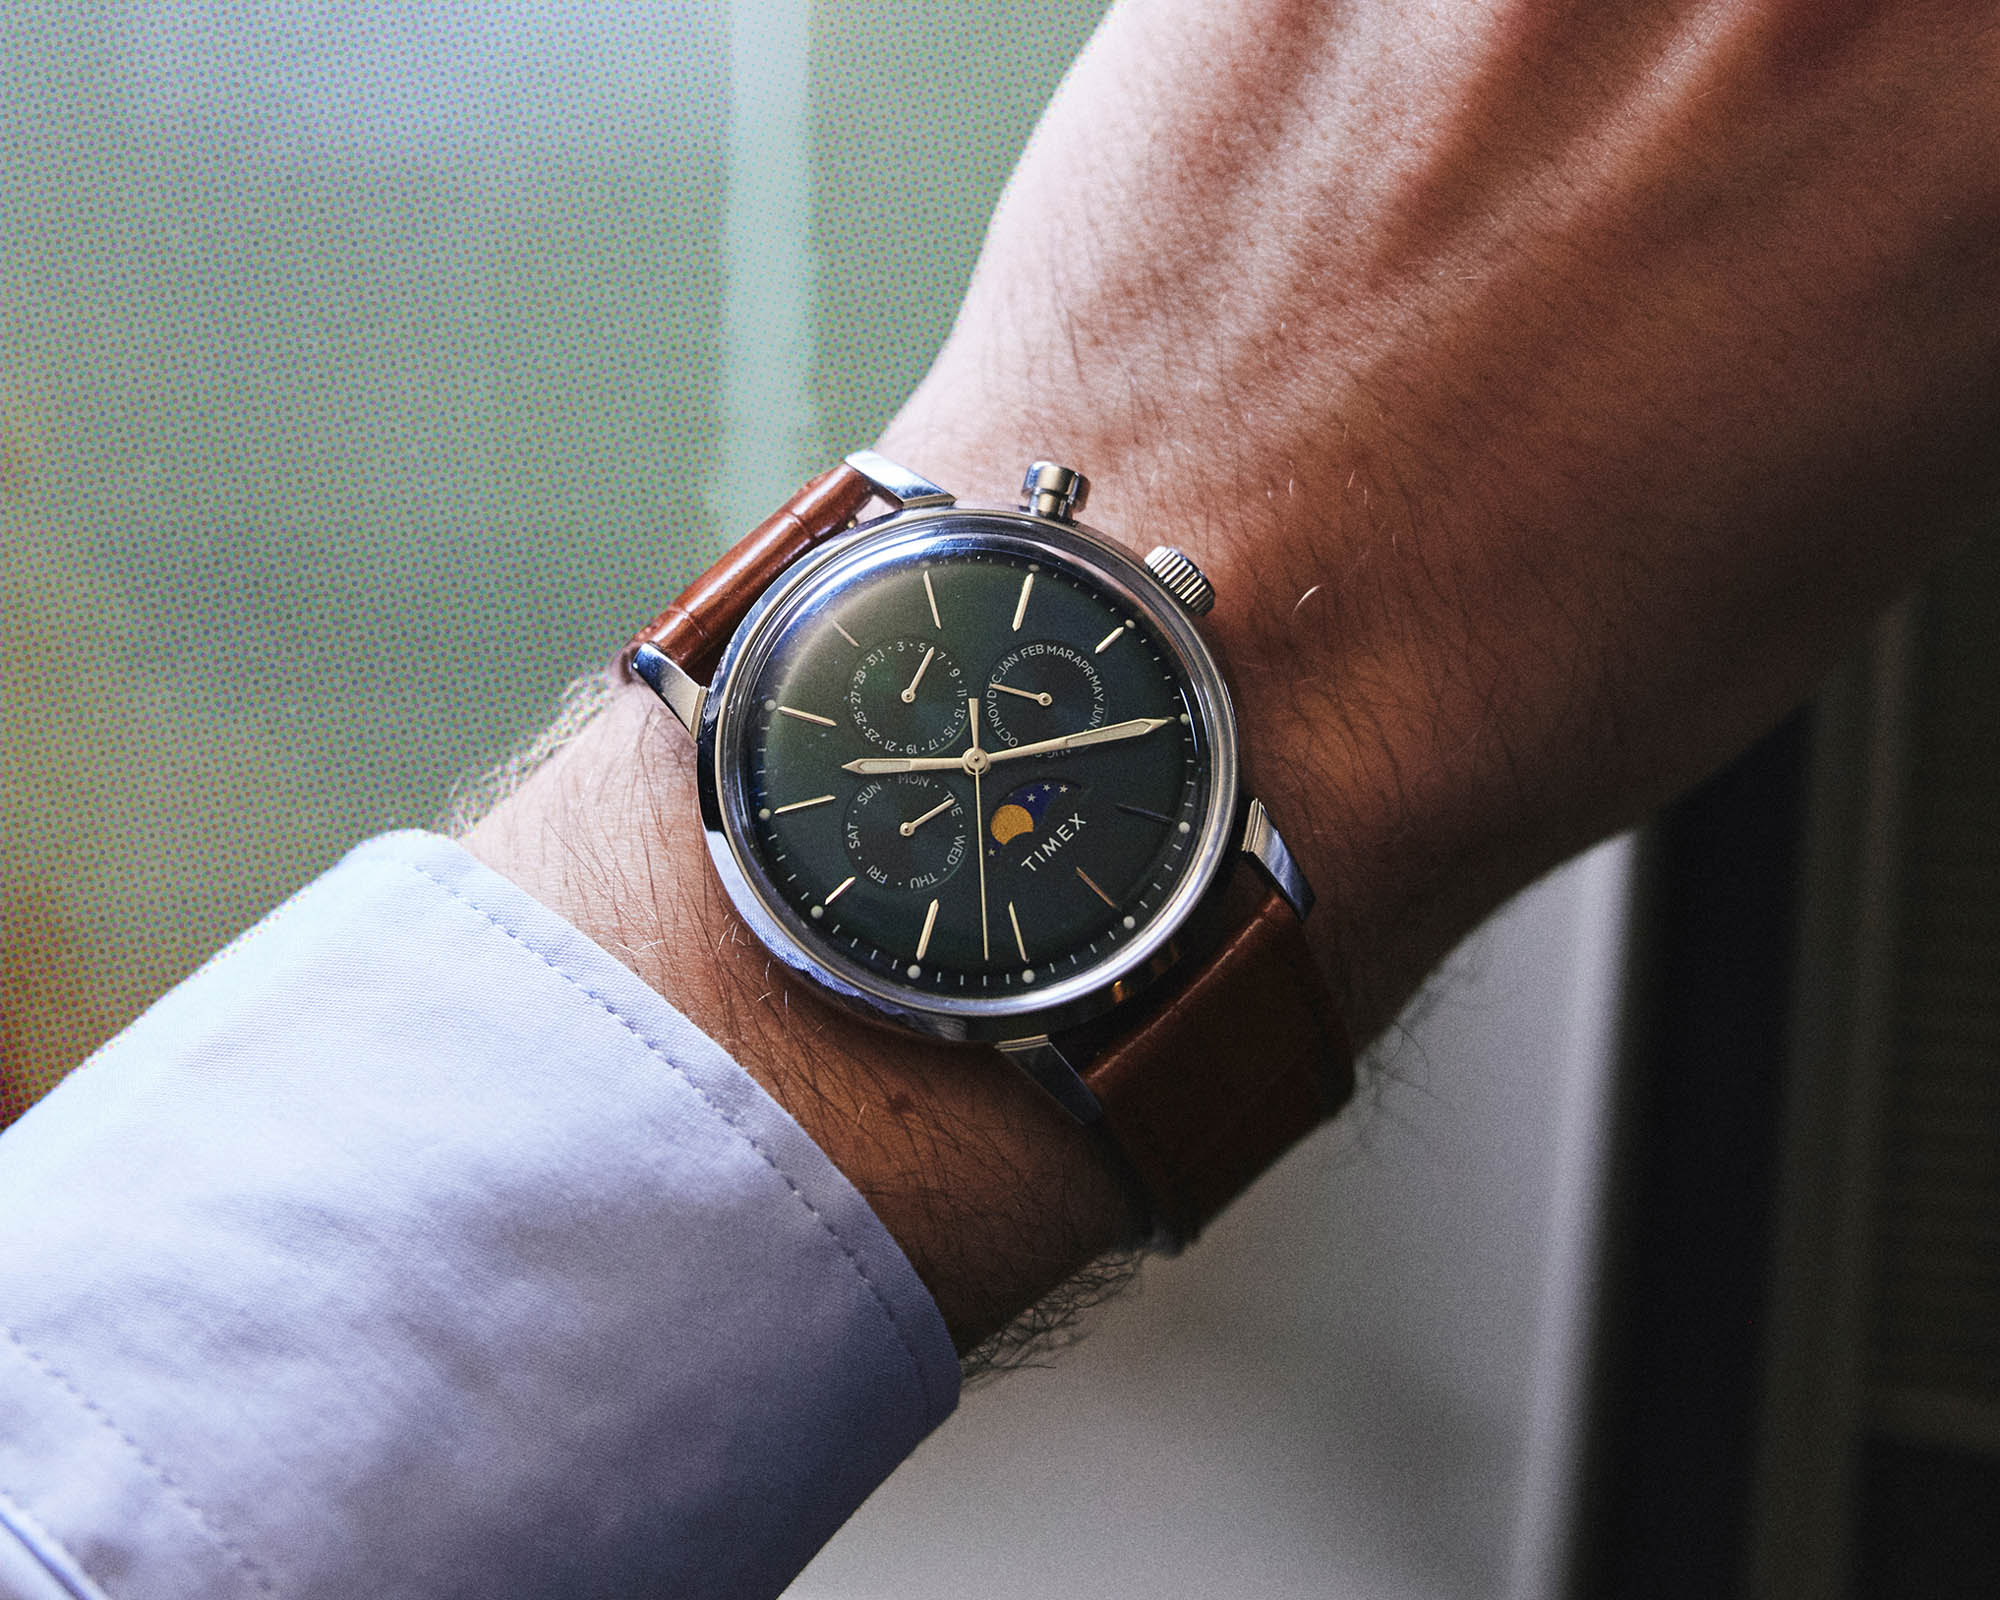 Многофункциональные, хронографические и доступные автоматические часы Timex Marlin Moon Phase